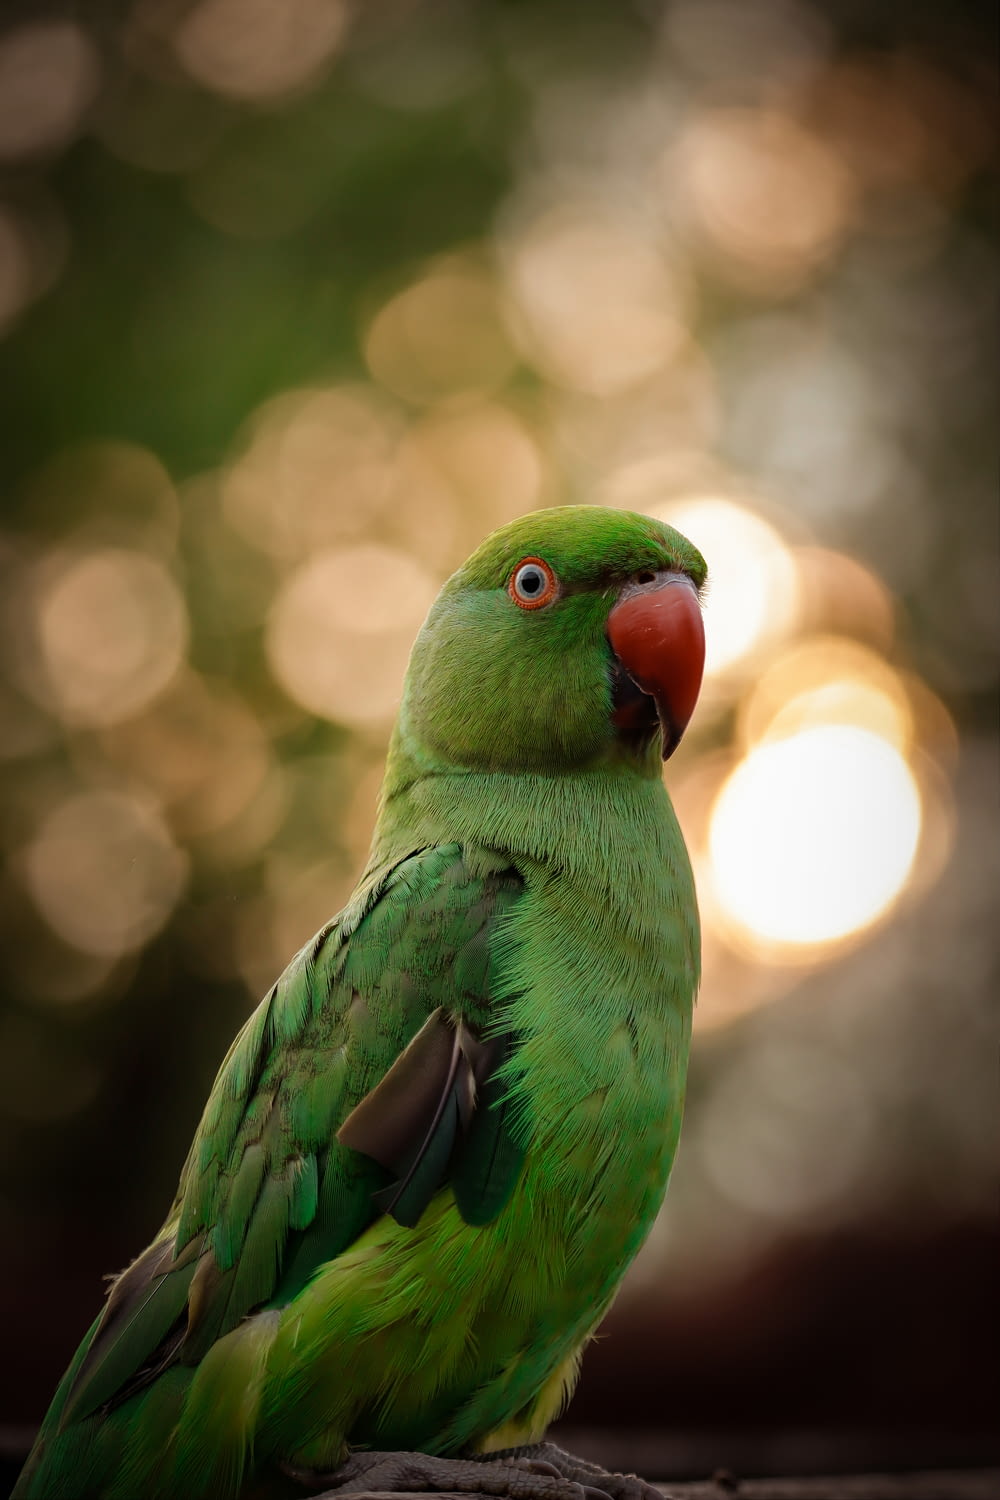 green bird in tilt shift lens